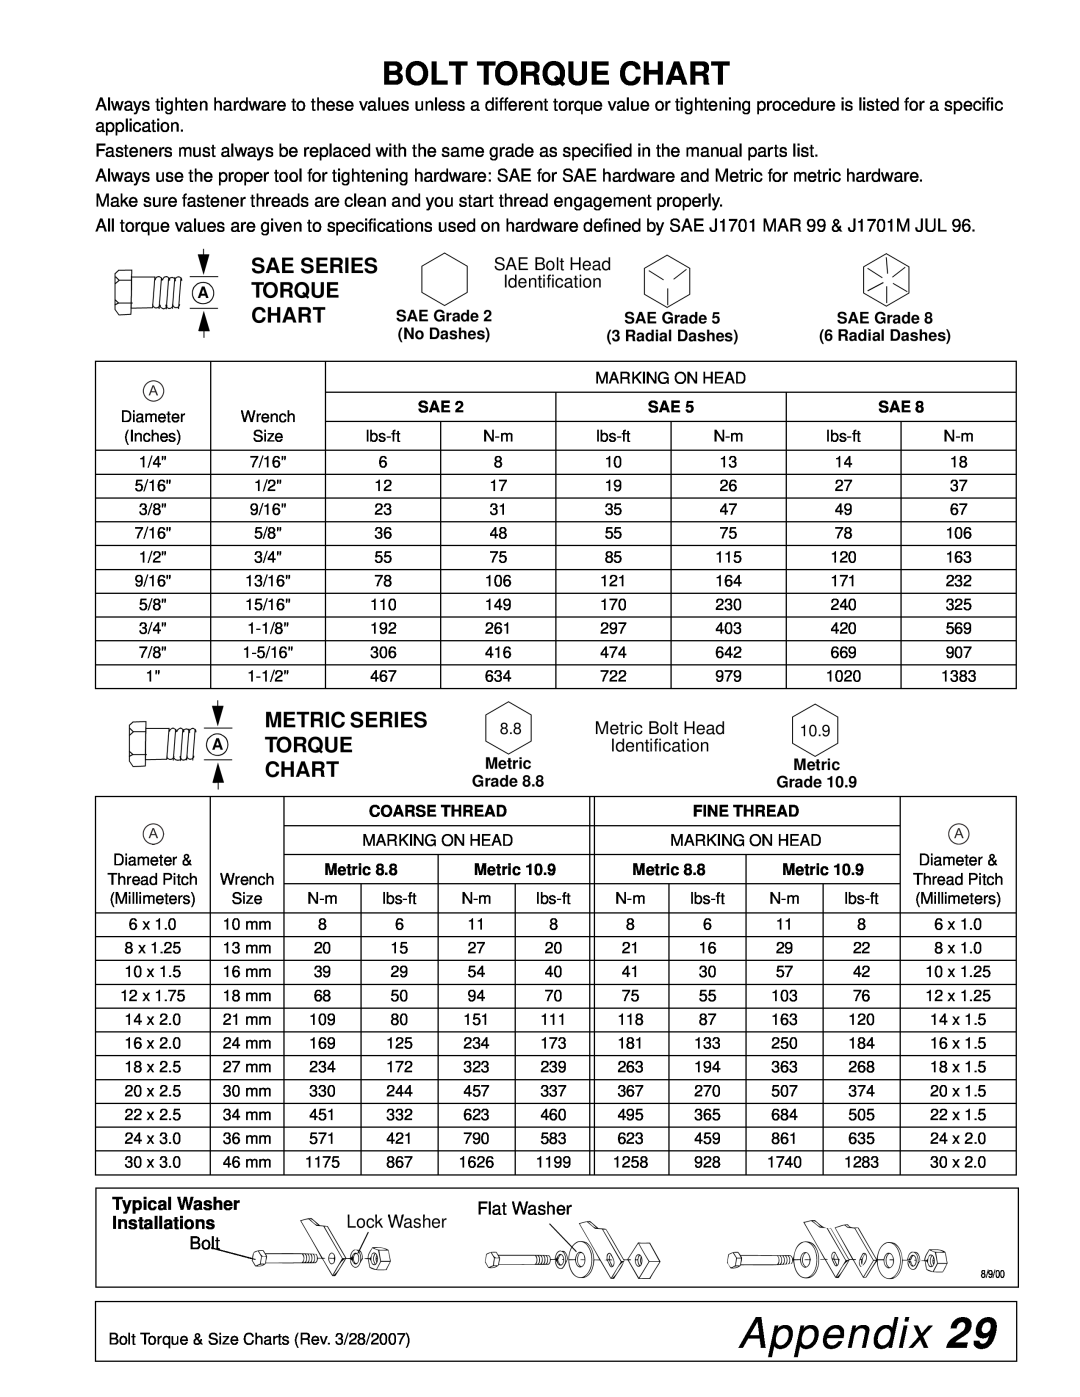 Woods Equipment L59, L36 manual Appendix, Bolt Torque Chart, Sae Series A Torque Chart, Metric Series 